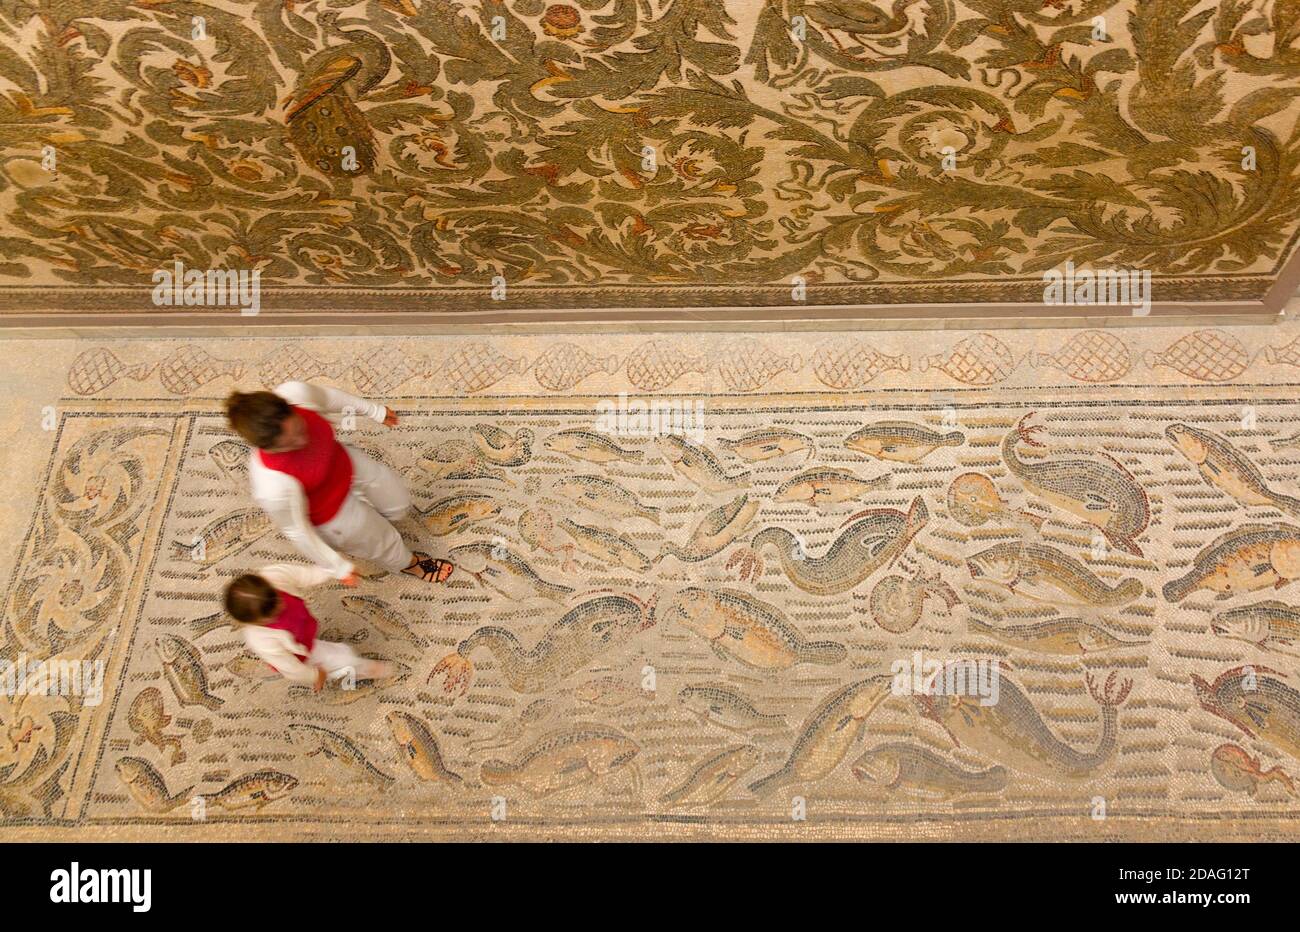 Dentro del Museo Nacional Bardo, piso y techo cubierto de mosaico, Túnez, Túnez Foto de stock